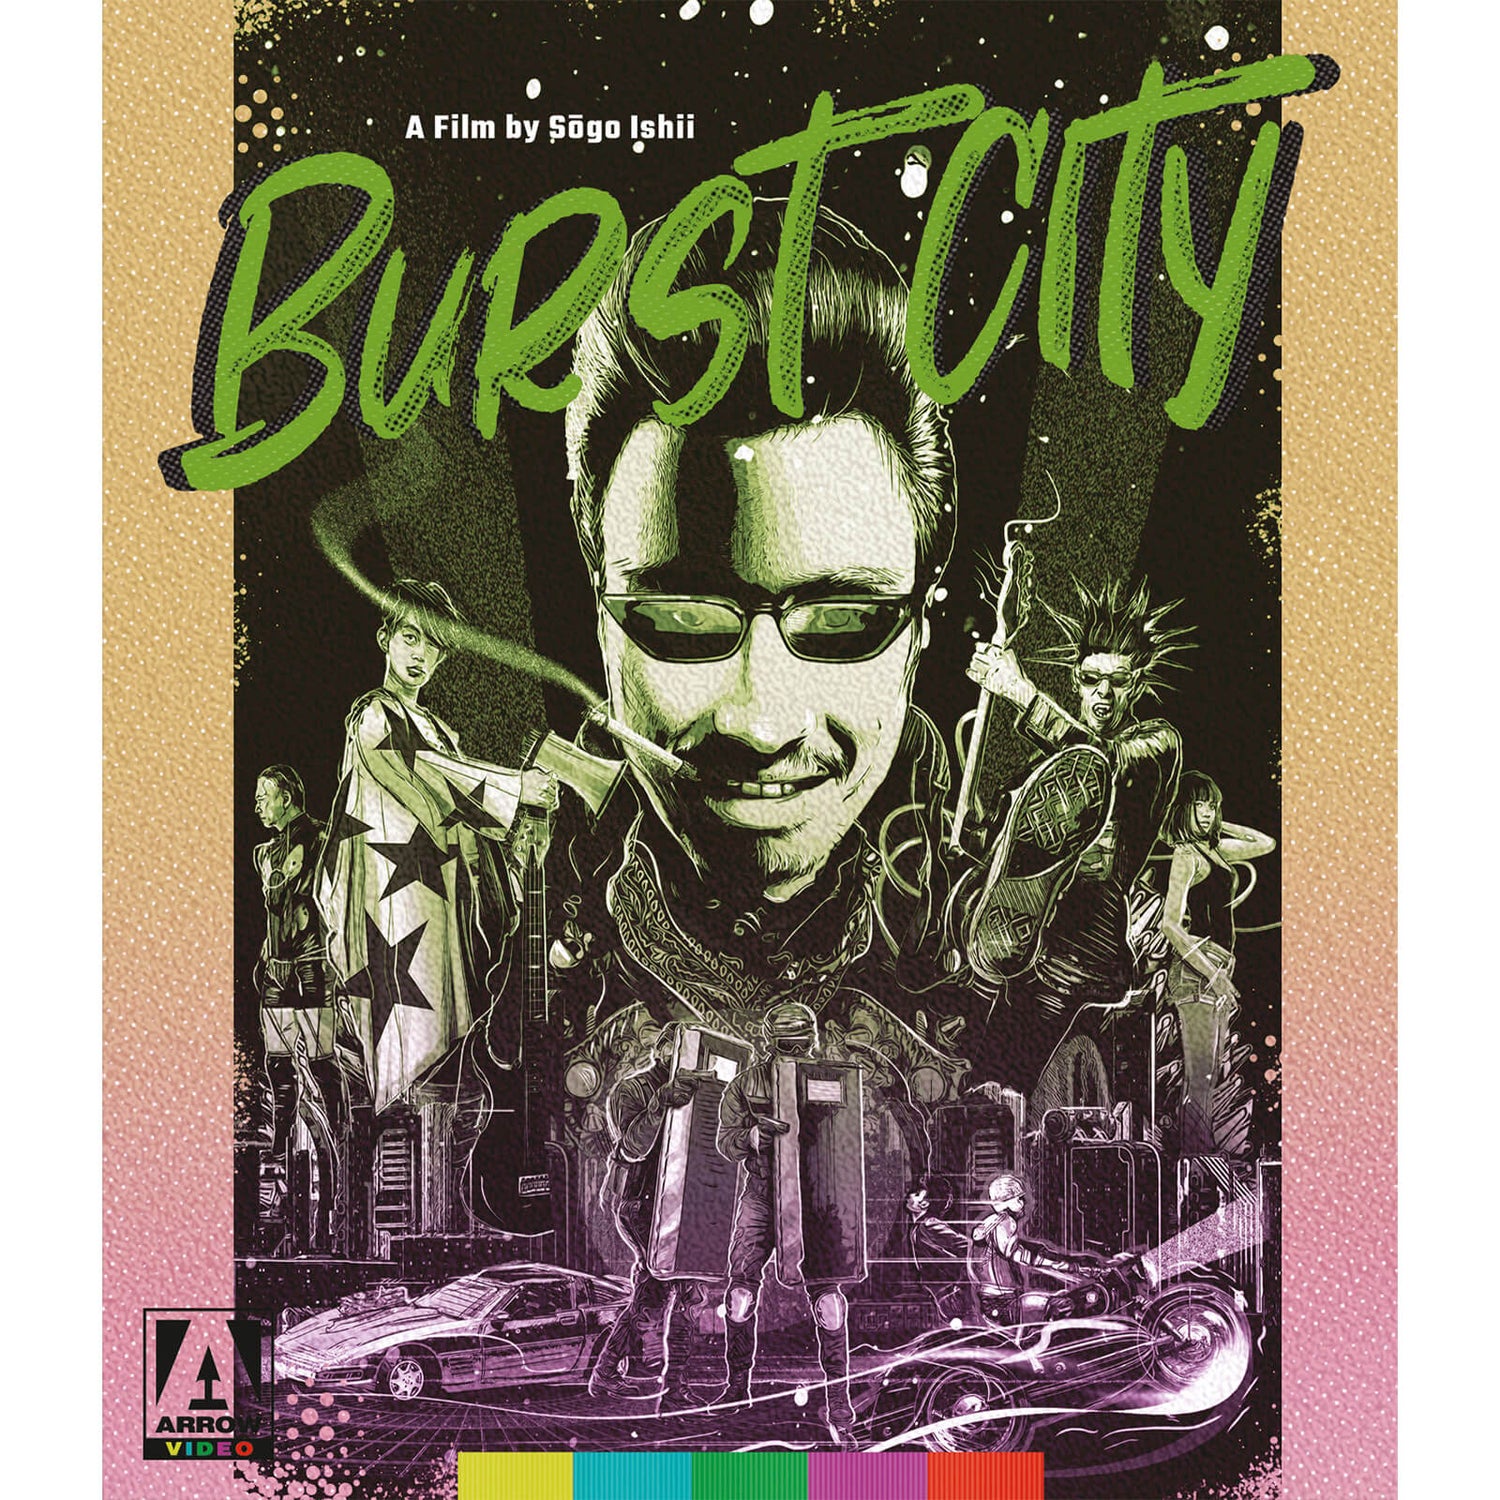 Burst City Blu-ray